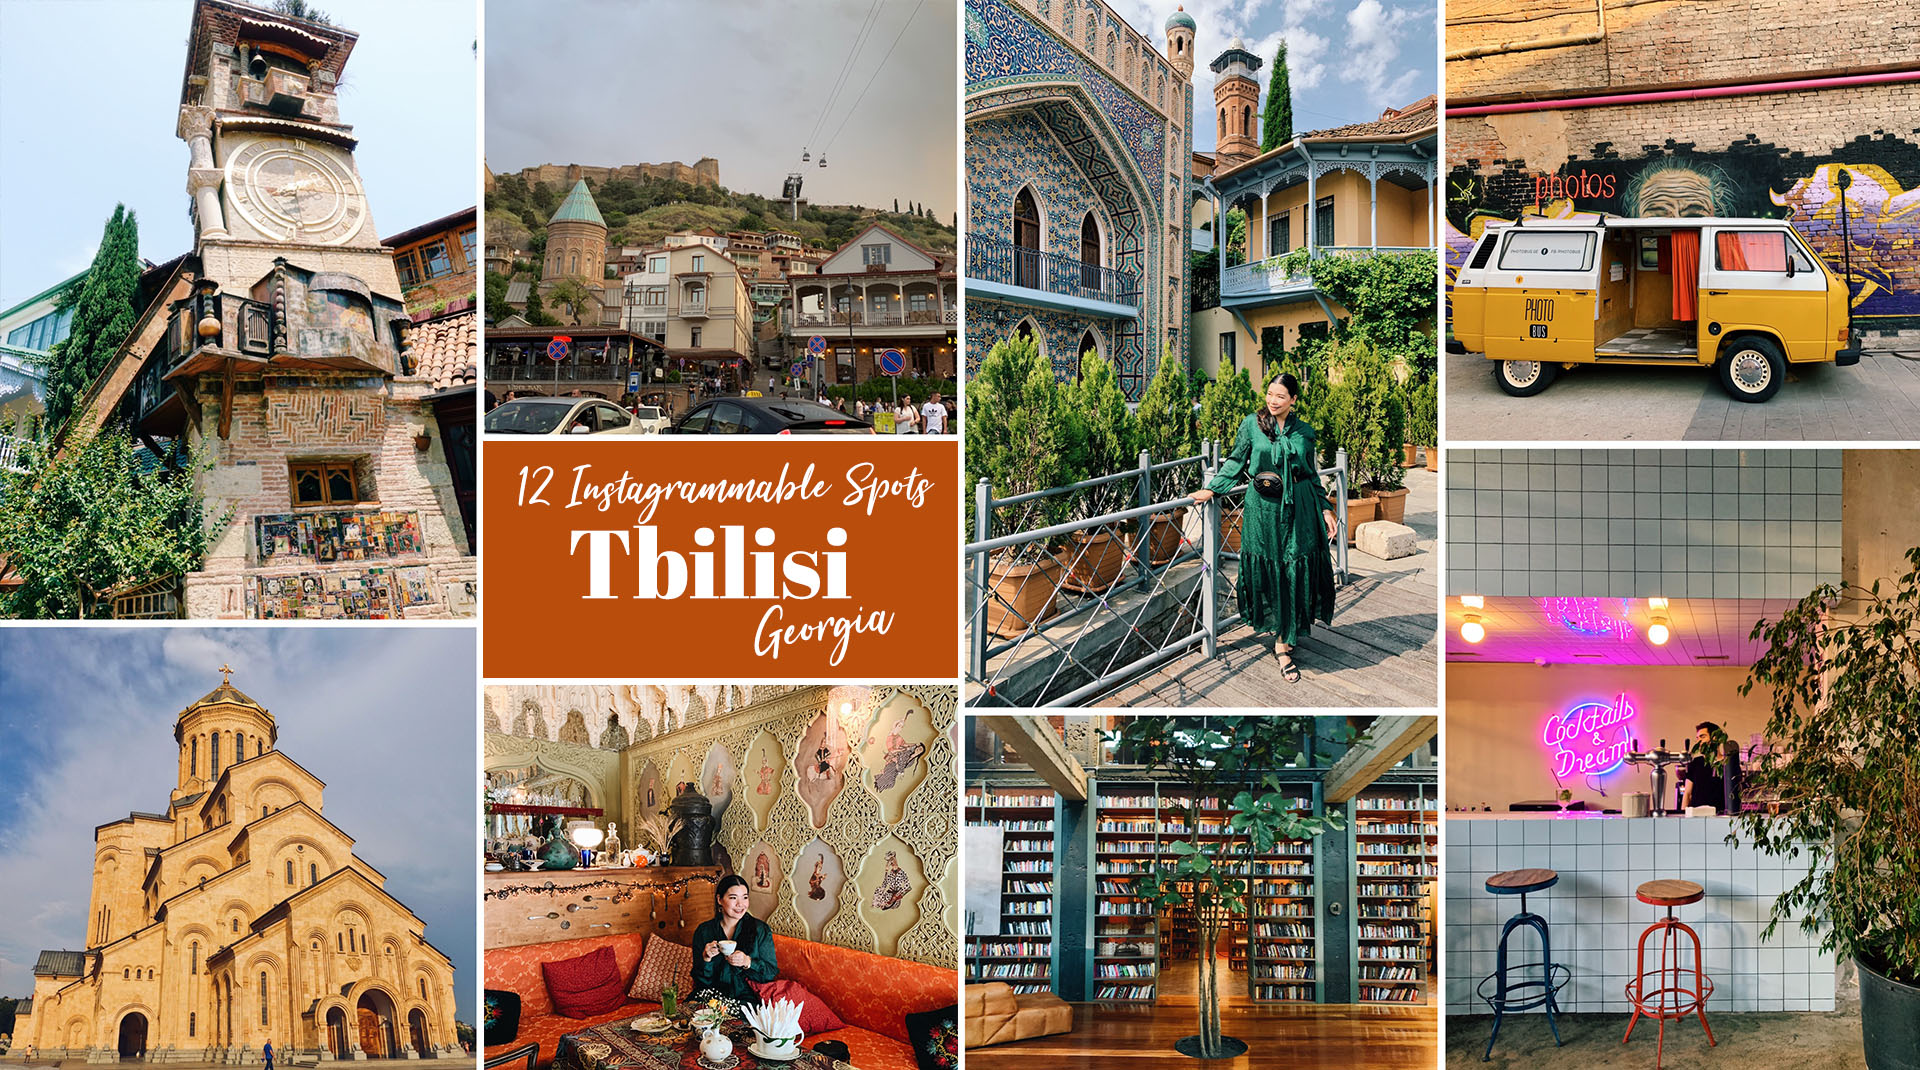 12 ที่เที่ยว เมือง Tbilisi ประเทศจอร์เจีย จุดถ่ายรูปสวยๆ ไปง่าย อลังการ |  Eat Chill Wander